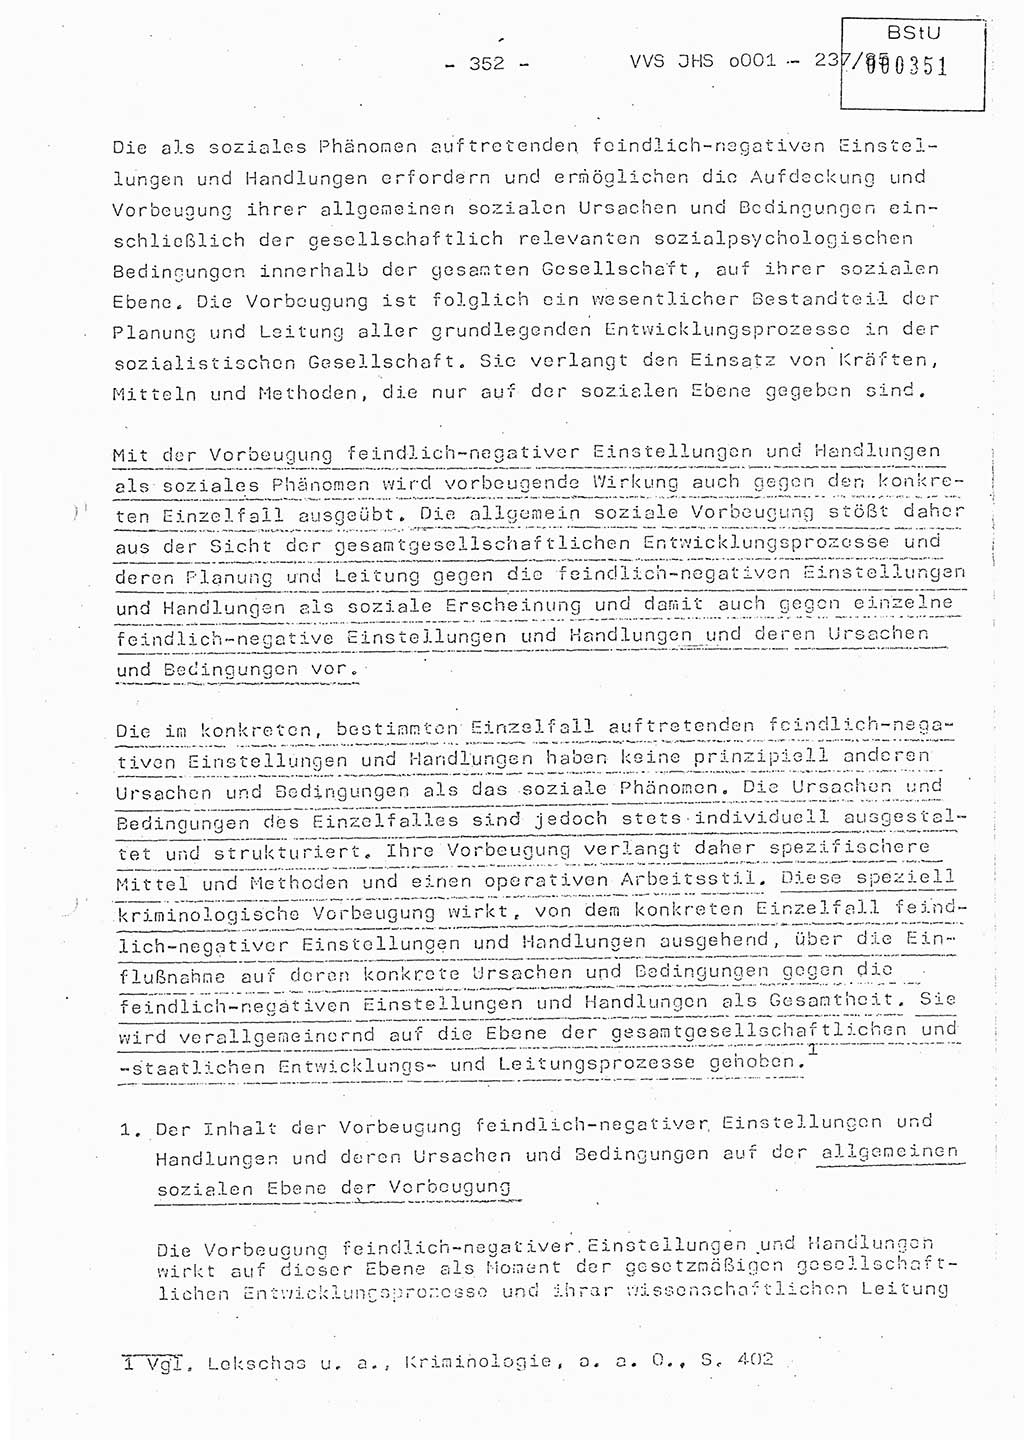 Dissertation Oberstleutnant Peter Jakulski (JHS), Oberstleutnat Christian Rudolph (HA Ⅸ), Major Horst Böttger (ZMD), Major Wolfgang Grüneberg (JHS), Major Albert Meutsch (JHS), Ministerium für Staatssicherheit (MfS) [Deutsche Demokratische Republik (DDR)], Juristische Hochschule (JHS), Vertrauliche Verschlußsache (VVS) o001-237/85, Potsdam 1985, Seite 352 (Diss. MfS DDR JHS VVS o001-237/85 1985, S. 352)